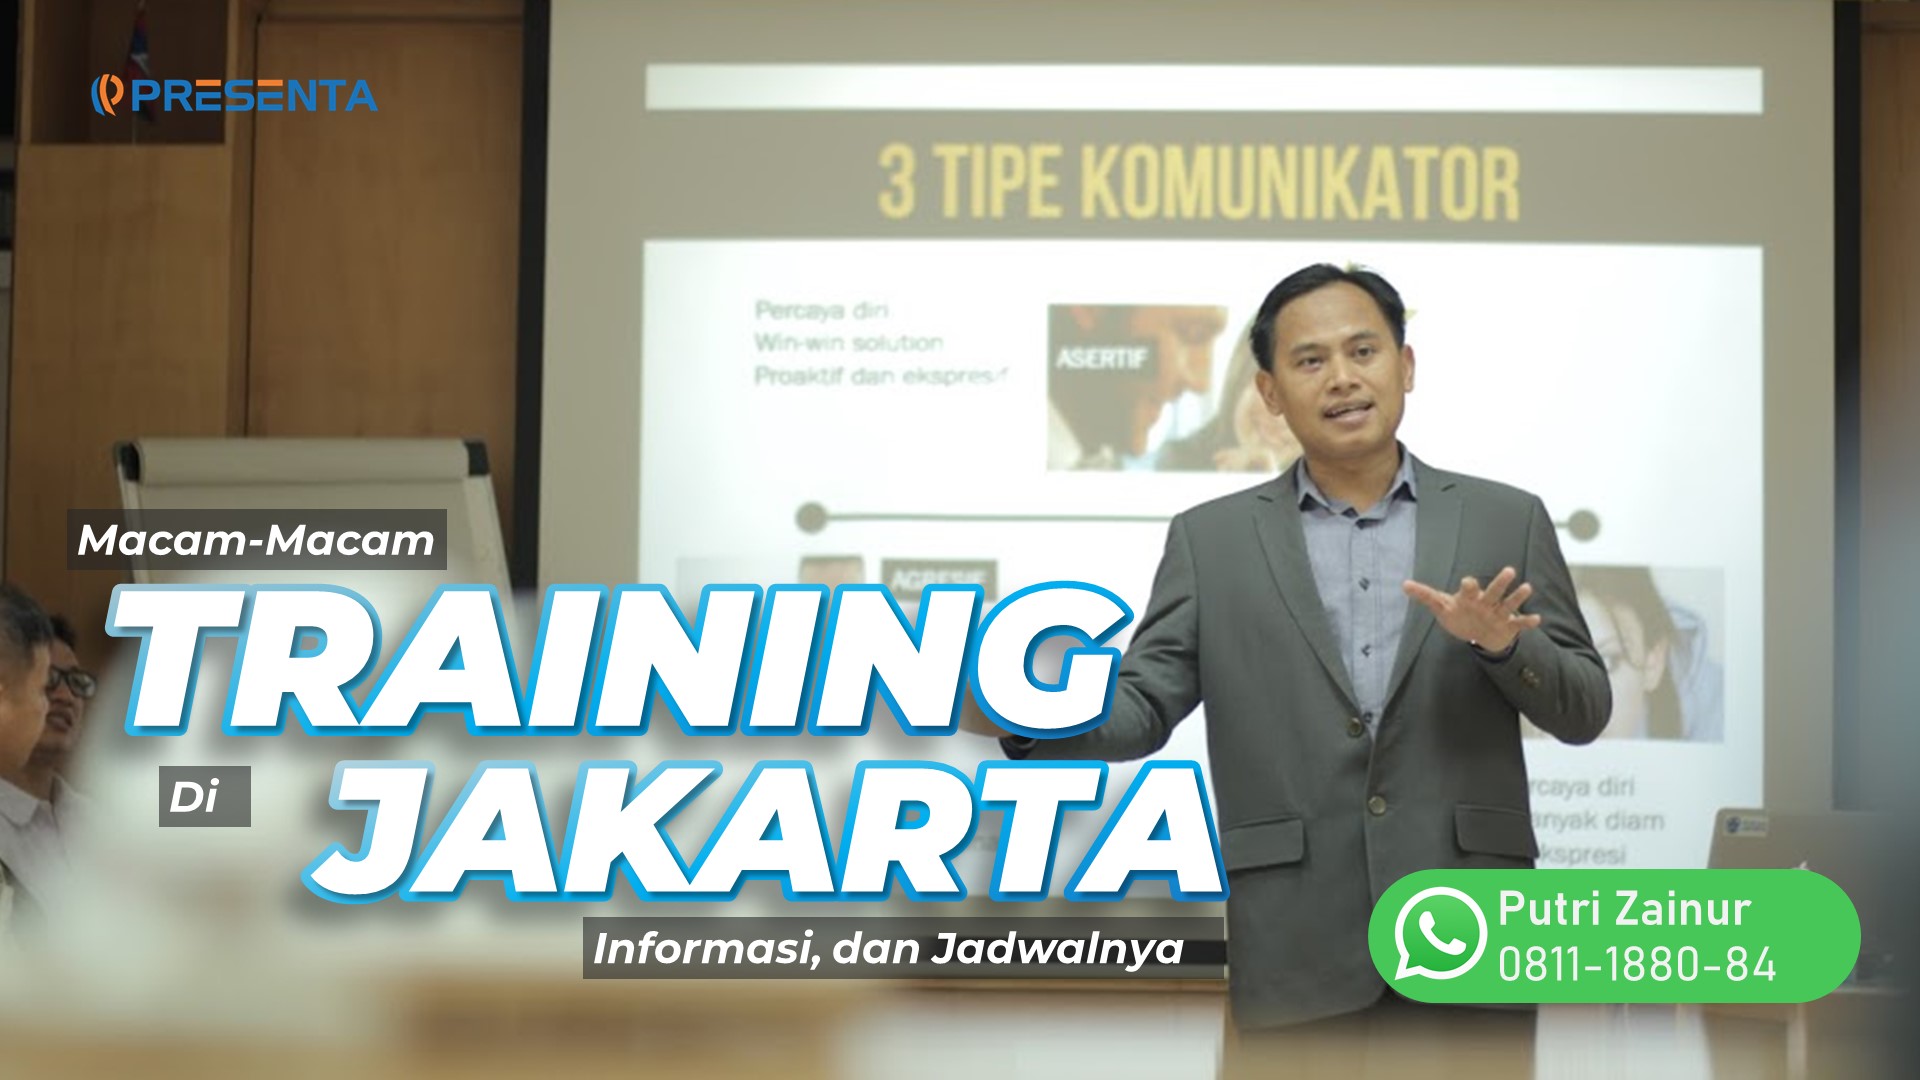 Macam-Macam Training di Jakarta, Informasi, dan Jadwalnya